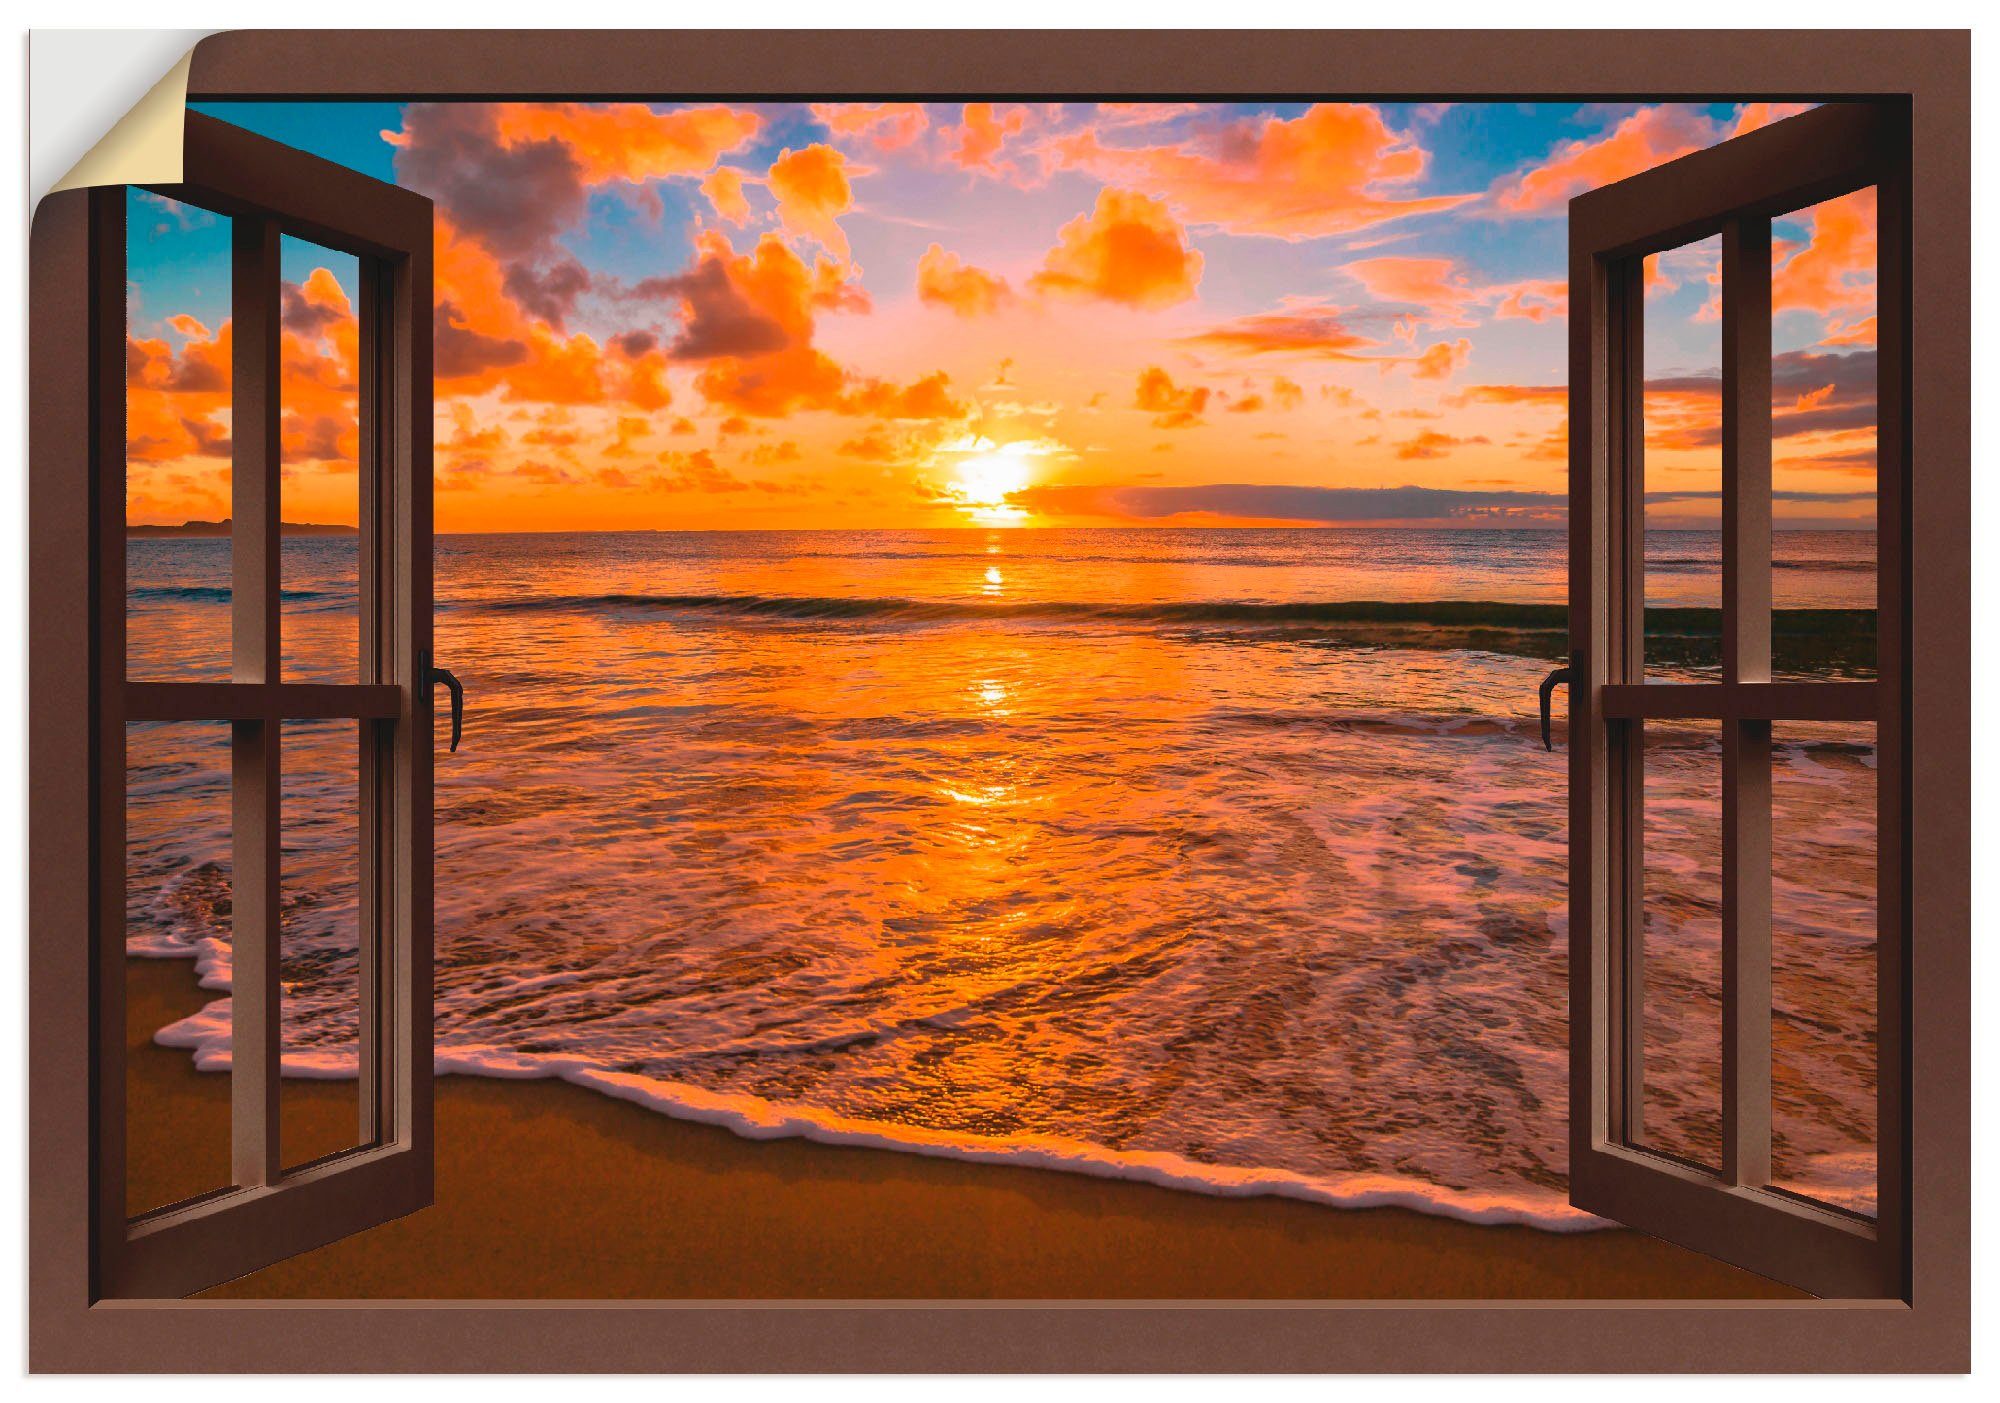 Artland Artprint Blik uit het venster zonsondergang aan het strand in vele afmetingen & productsoorten -artprint op linnen, poster, muursticker / wandfolie ook geschikt voor de bad